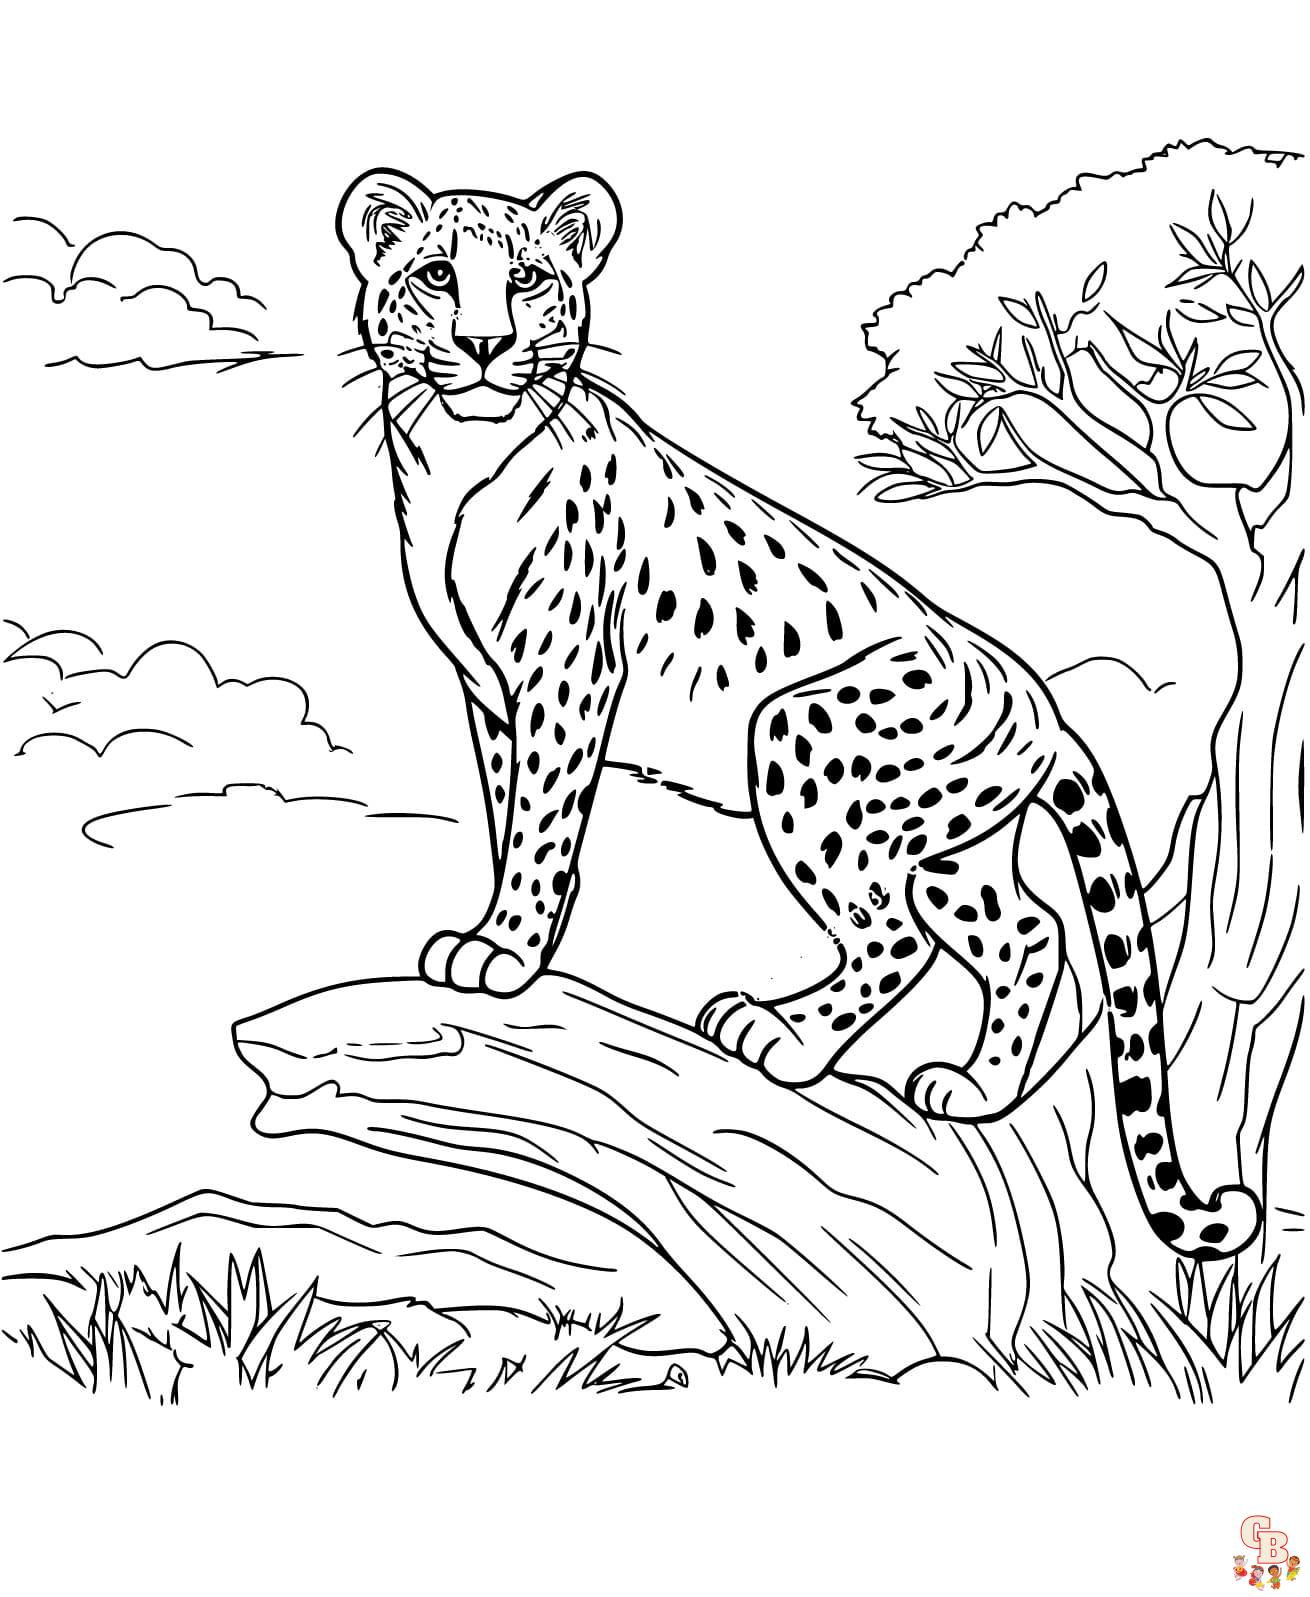 Printable Cheetah coloring sheets